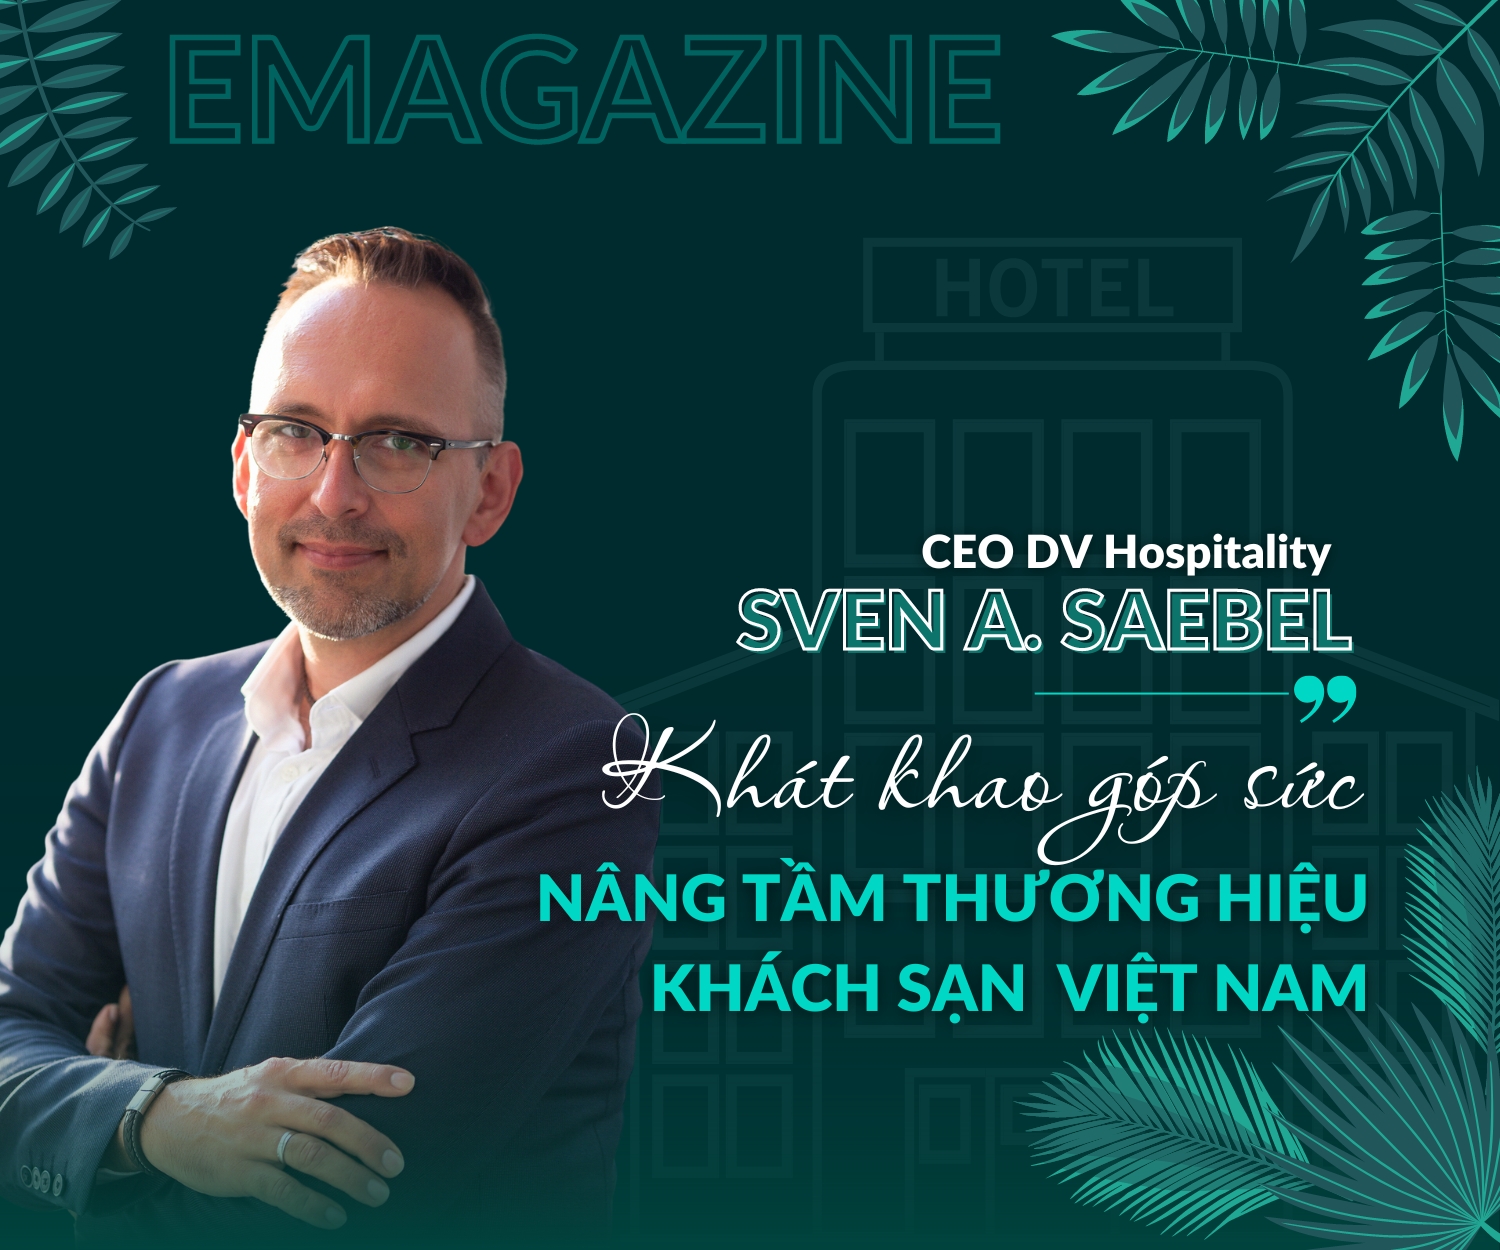 Doanh nhân Sven A. Saebel, CEO DV Hospitality: Khát khao góp sức nâng tầm thương hiệu khách sạn Việt Nam